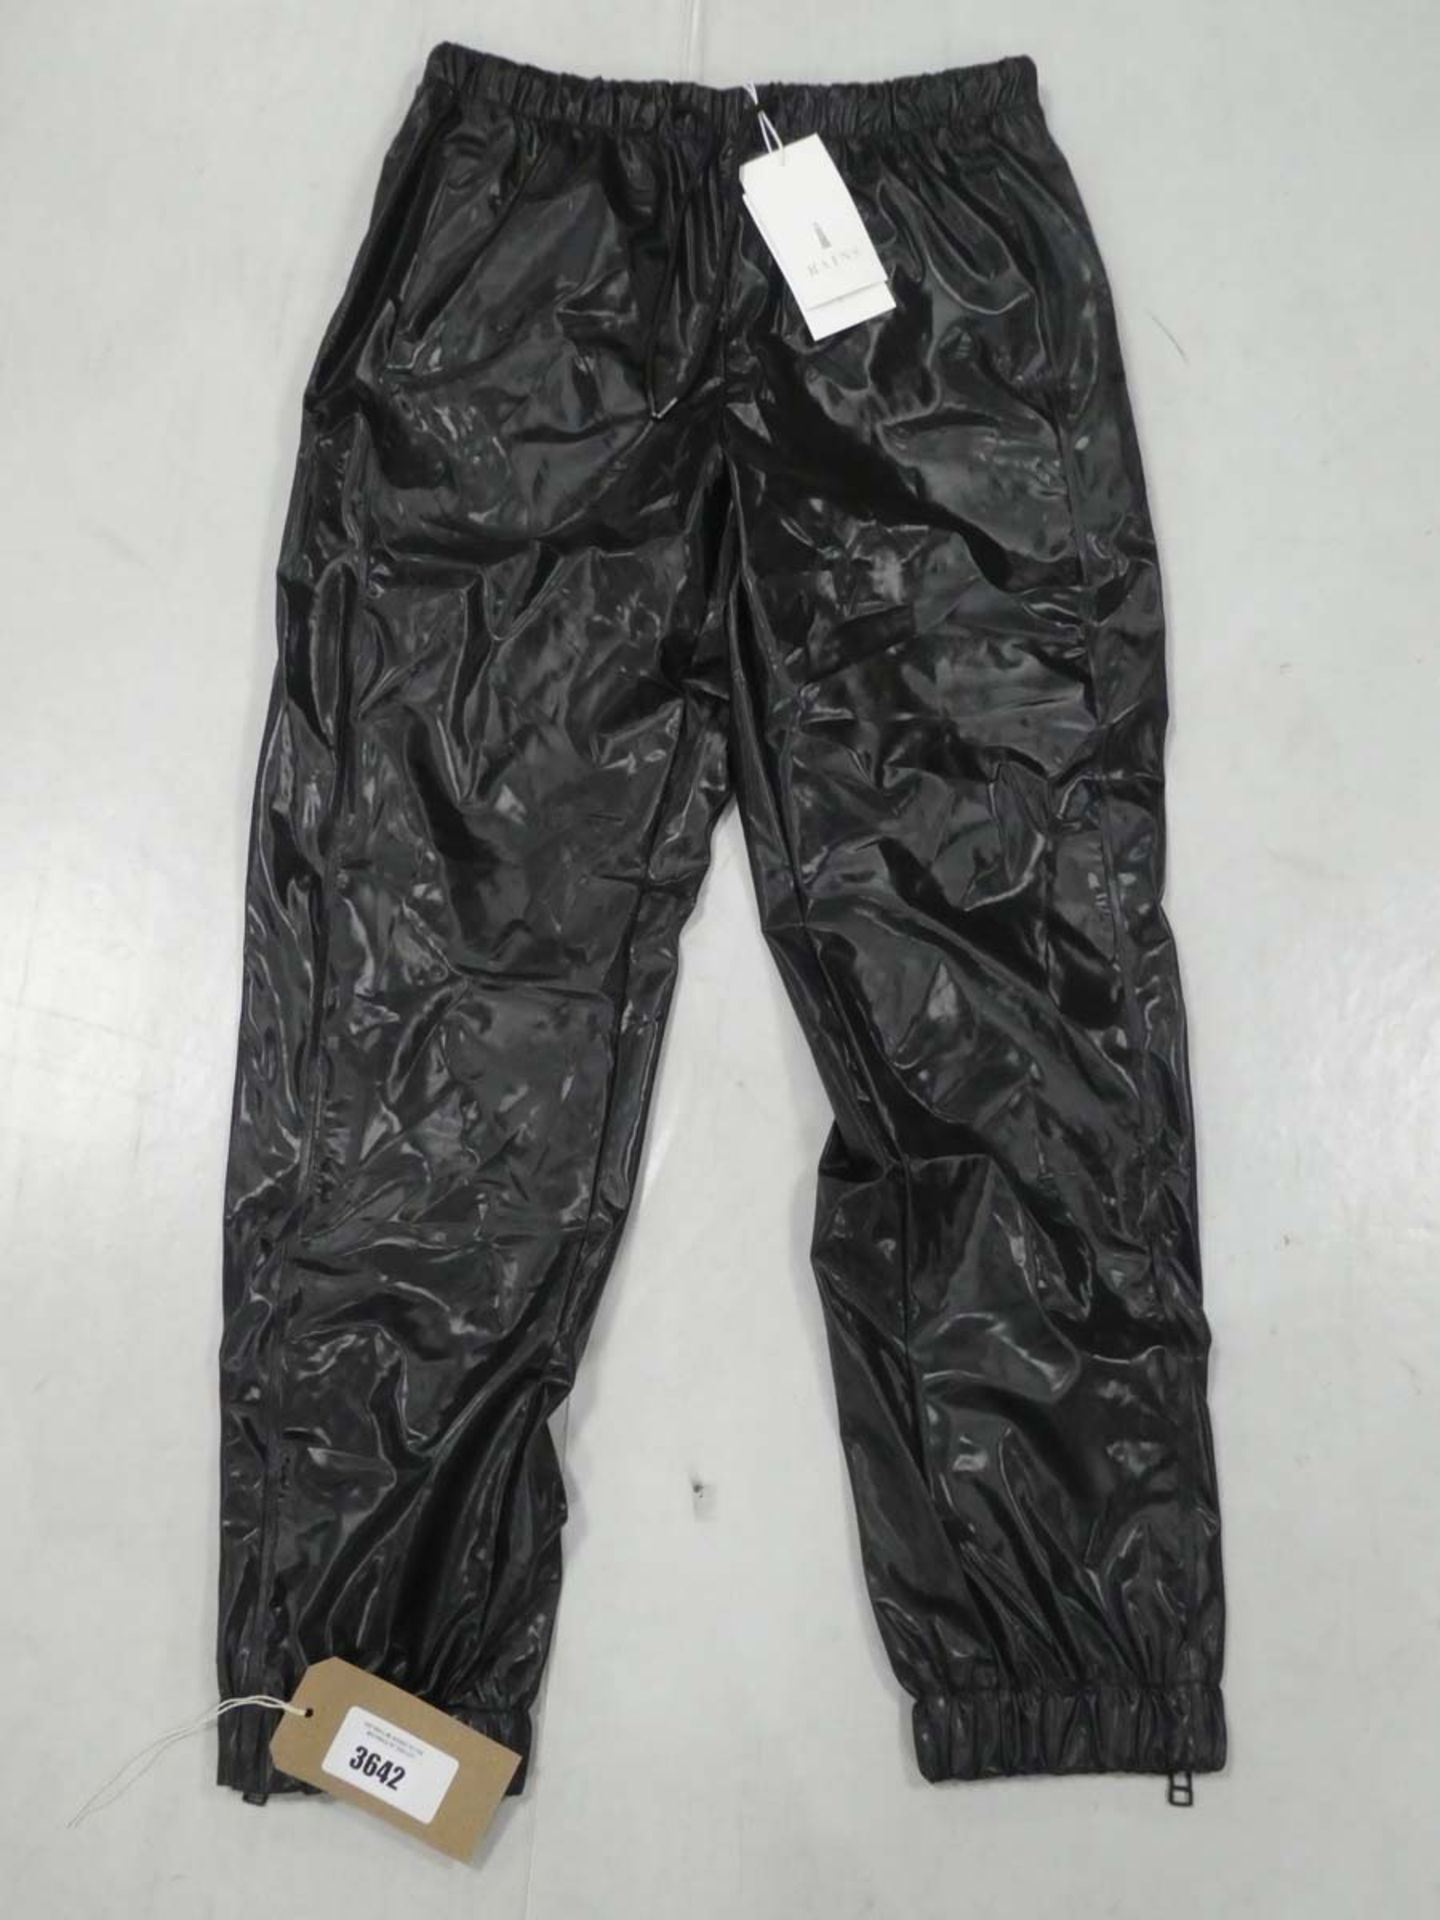 Rains shiny black pants size M/L